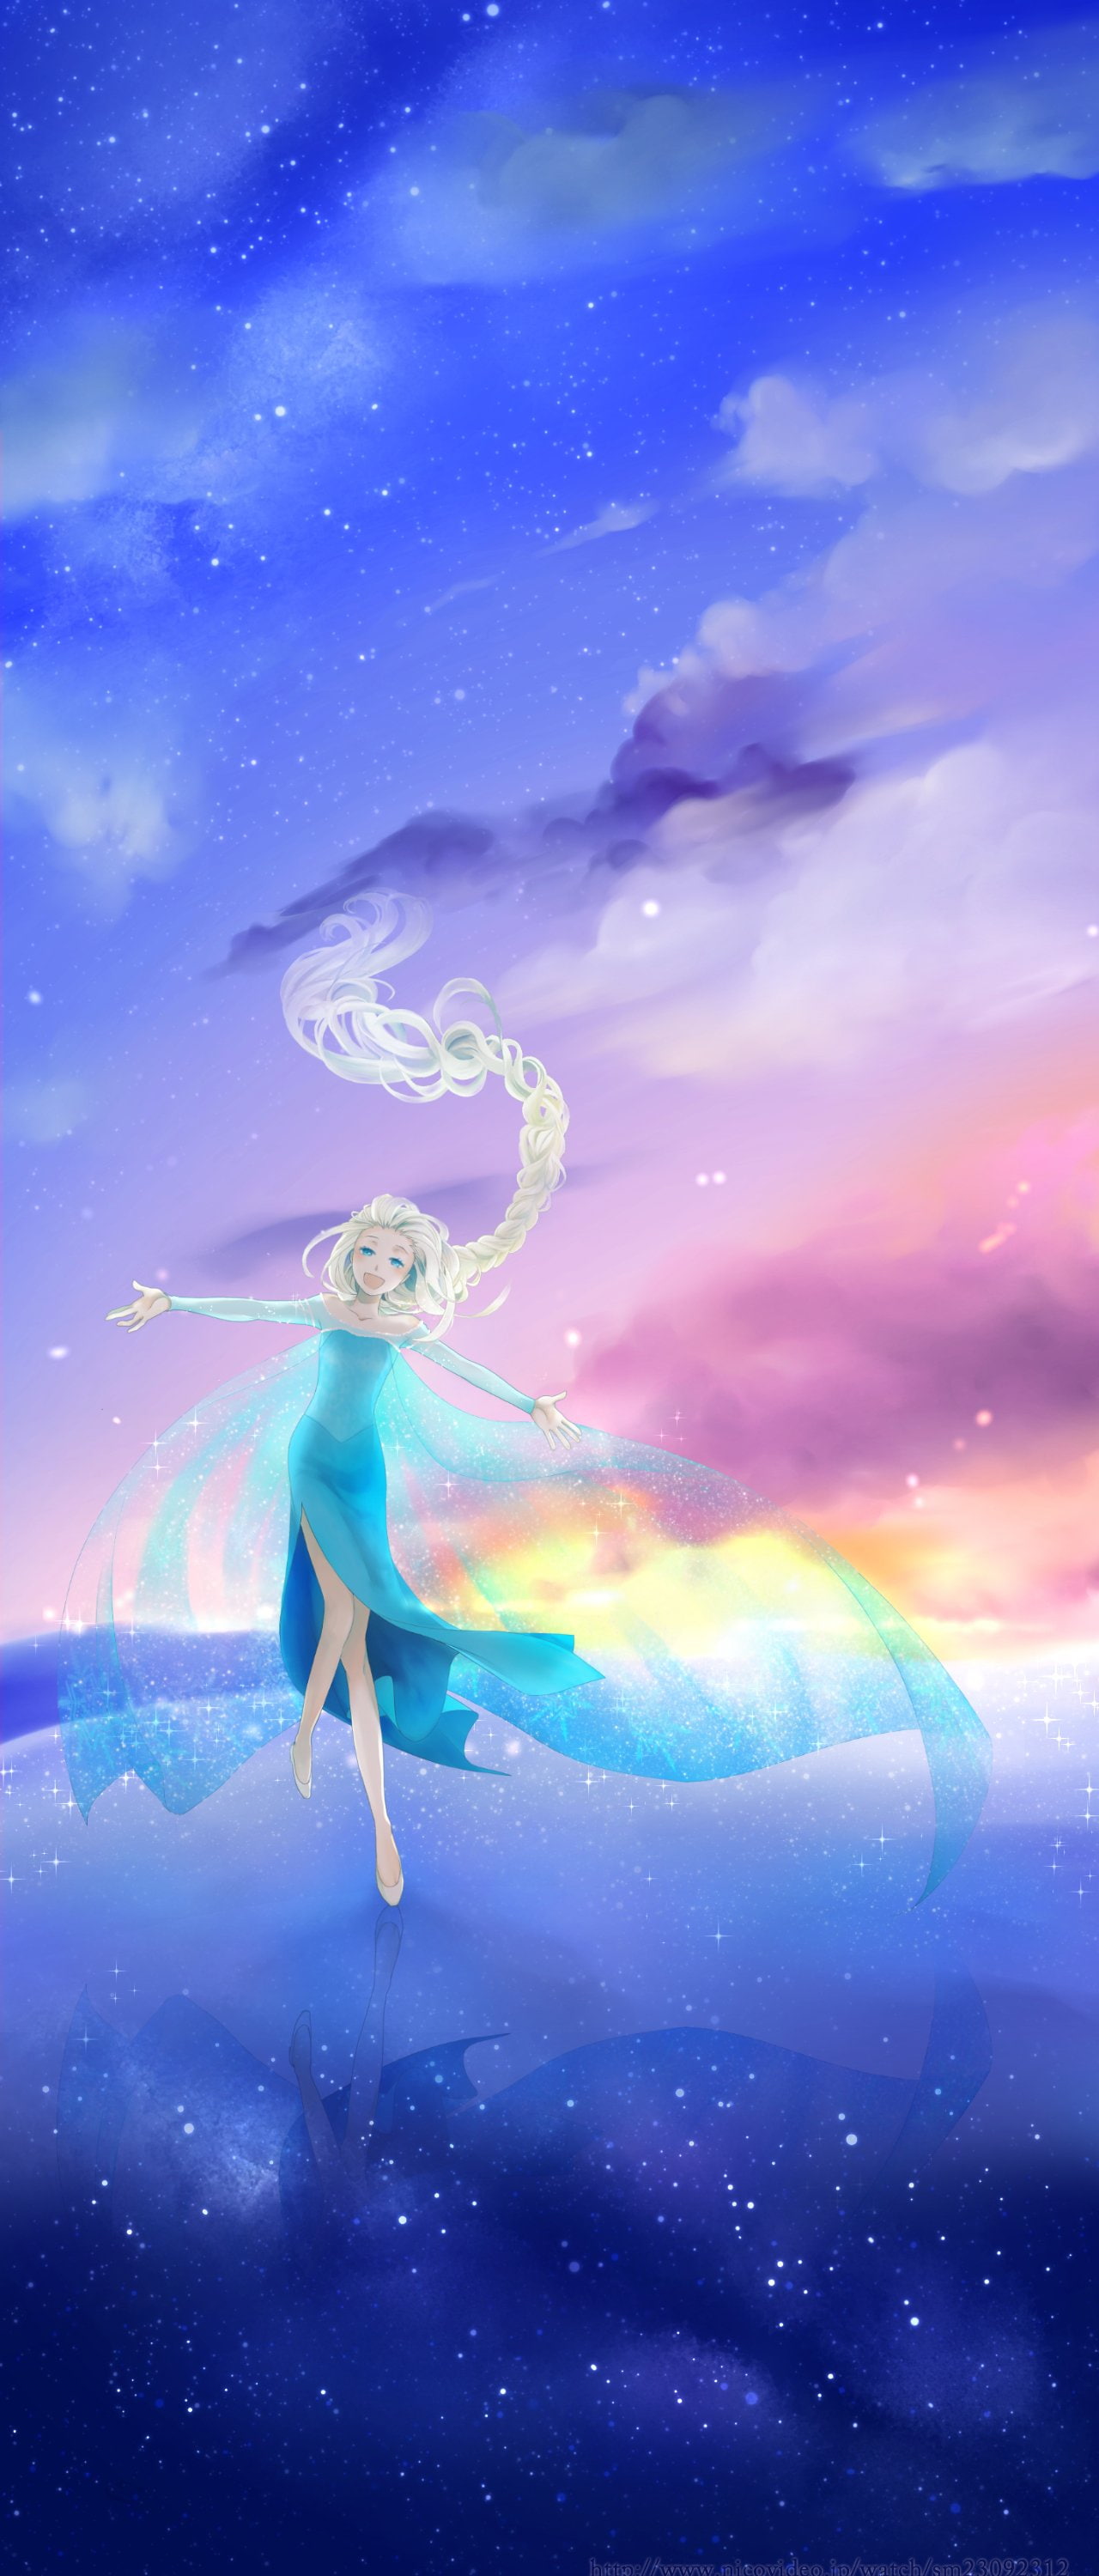 princess elsa cartoon frozen movie fan art, one person, sky